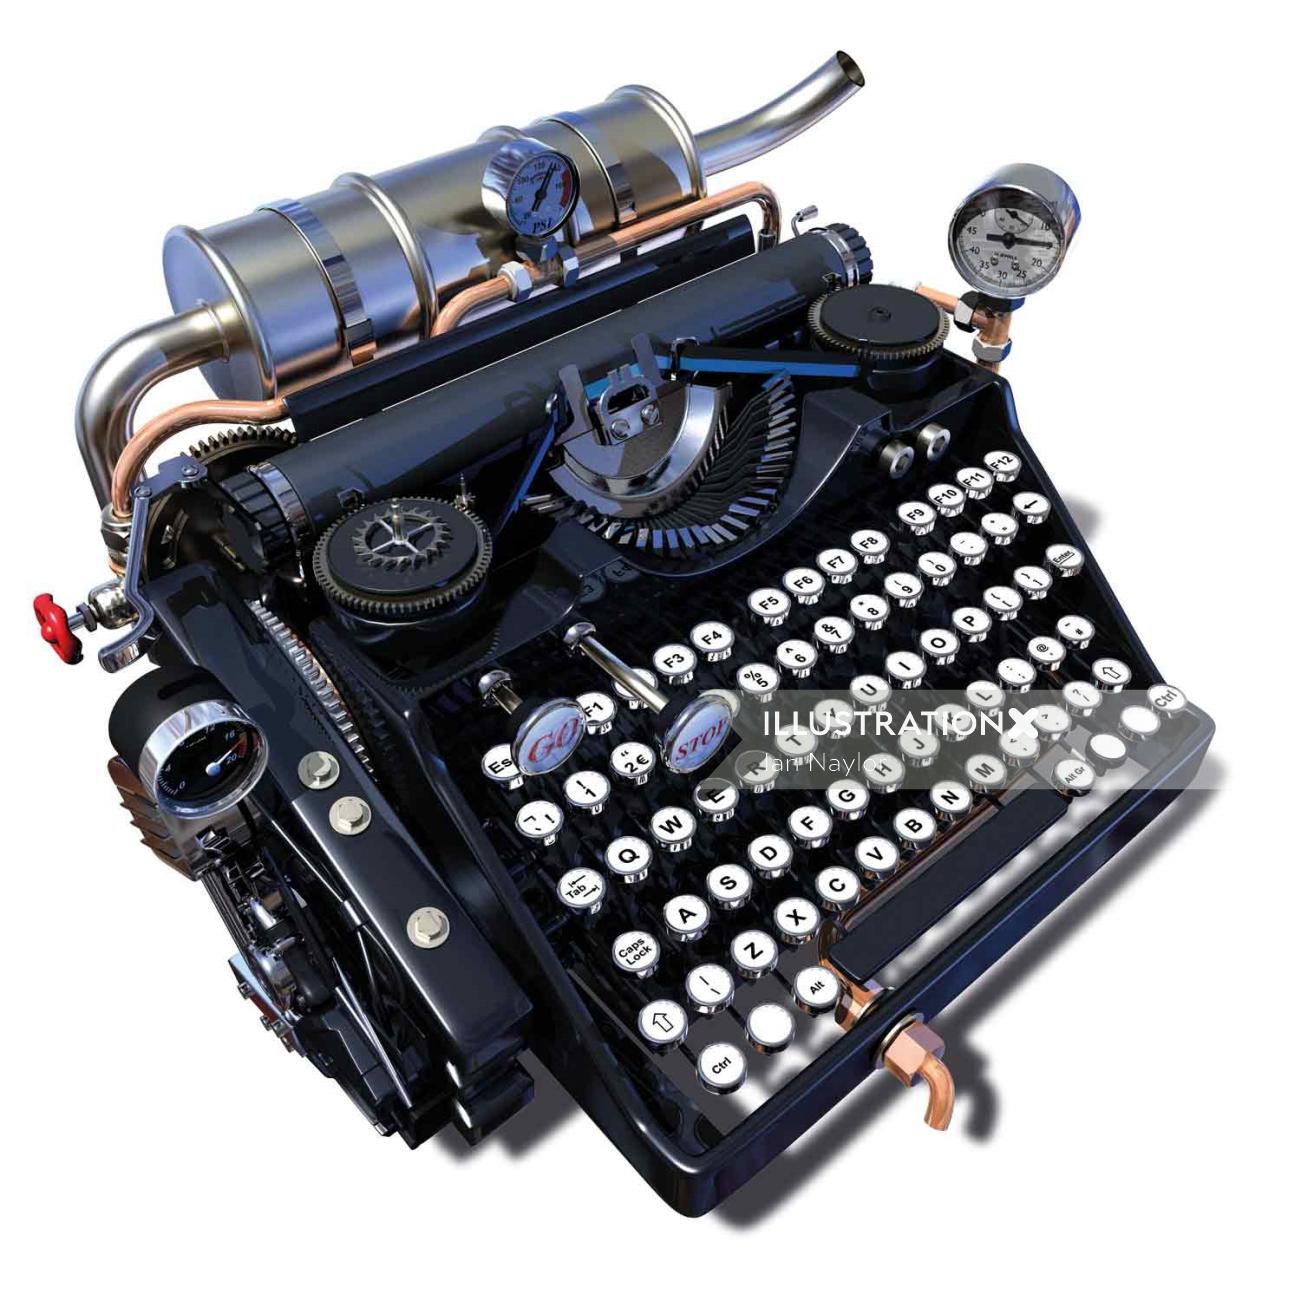 Illustration de machine à écrire par Ian Naylor